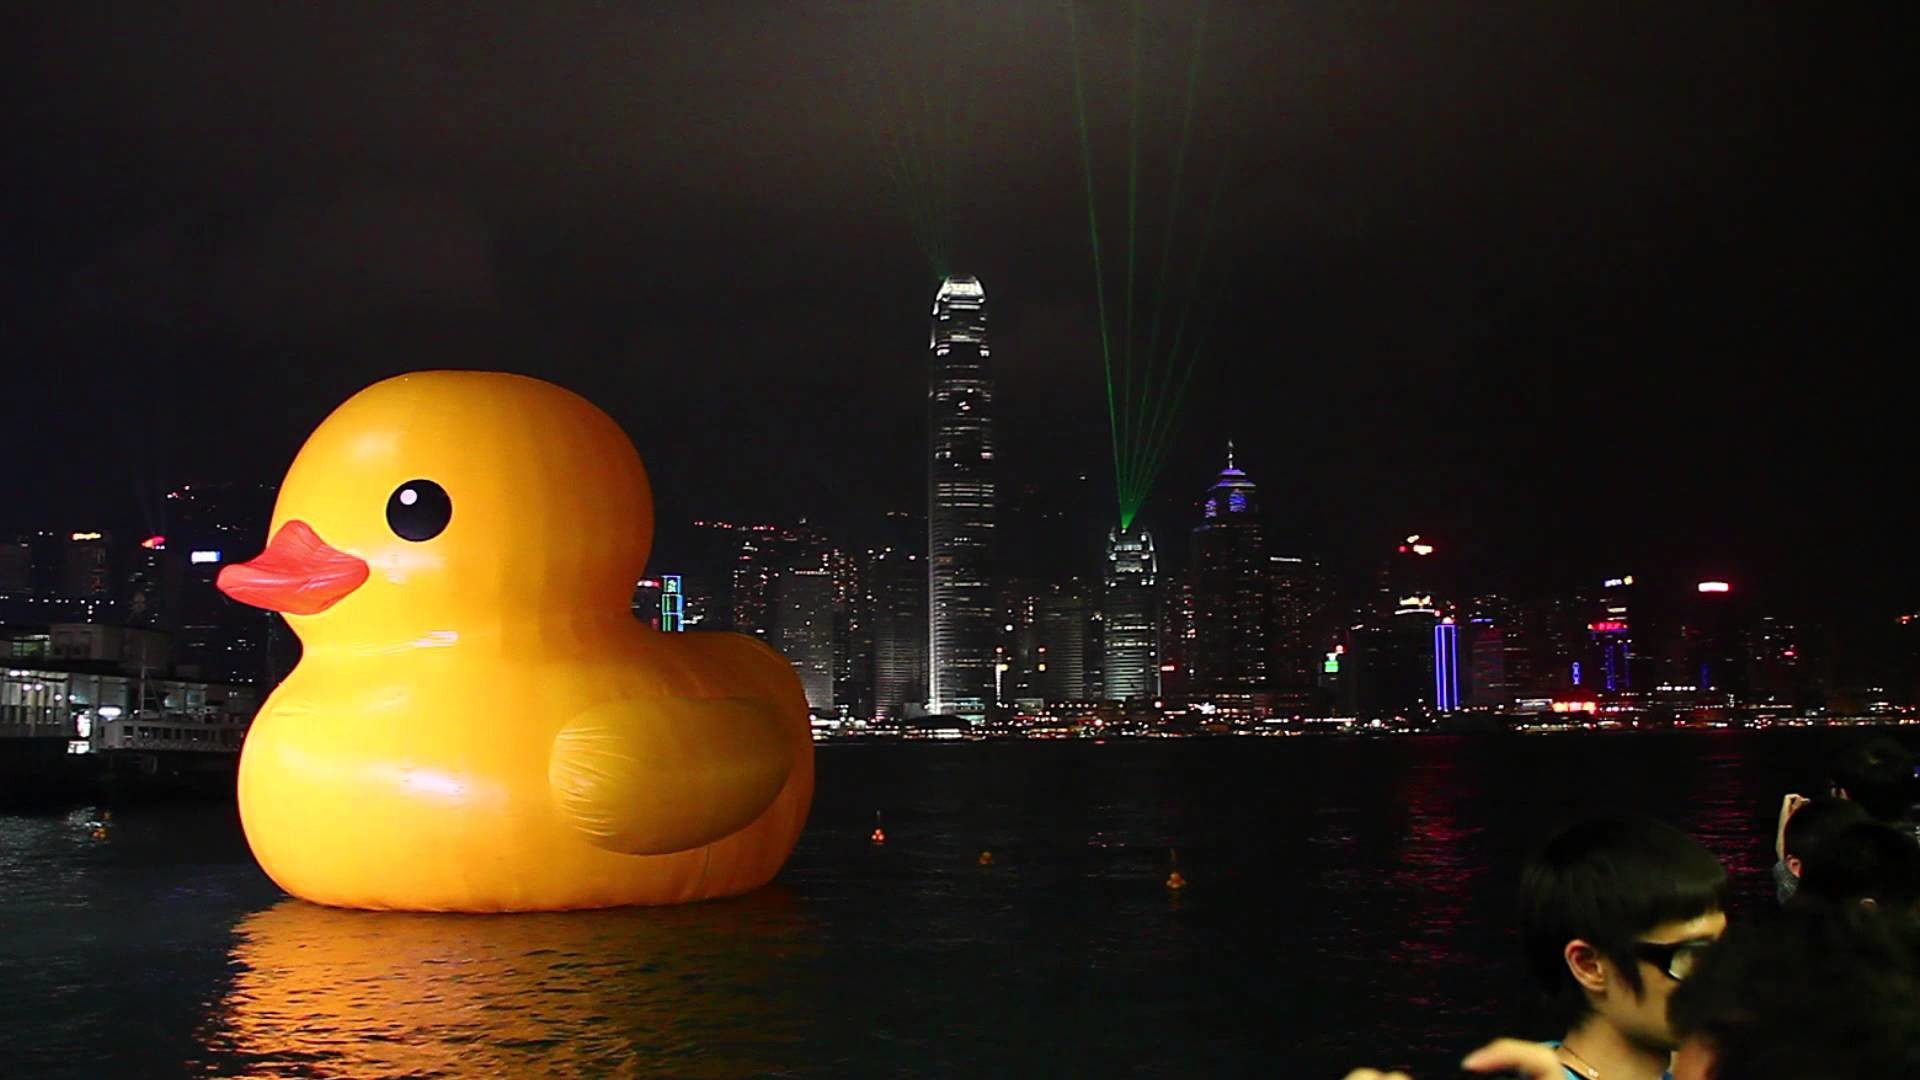 1920x1080 æ©¡ç®é´¨éä¸çé¦æ¸¯ç«Hong Kong Rubber Duck X é¦æ¸¯æ¥µåå¯æ¼HD 1080P 30ç§ç